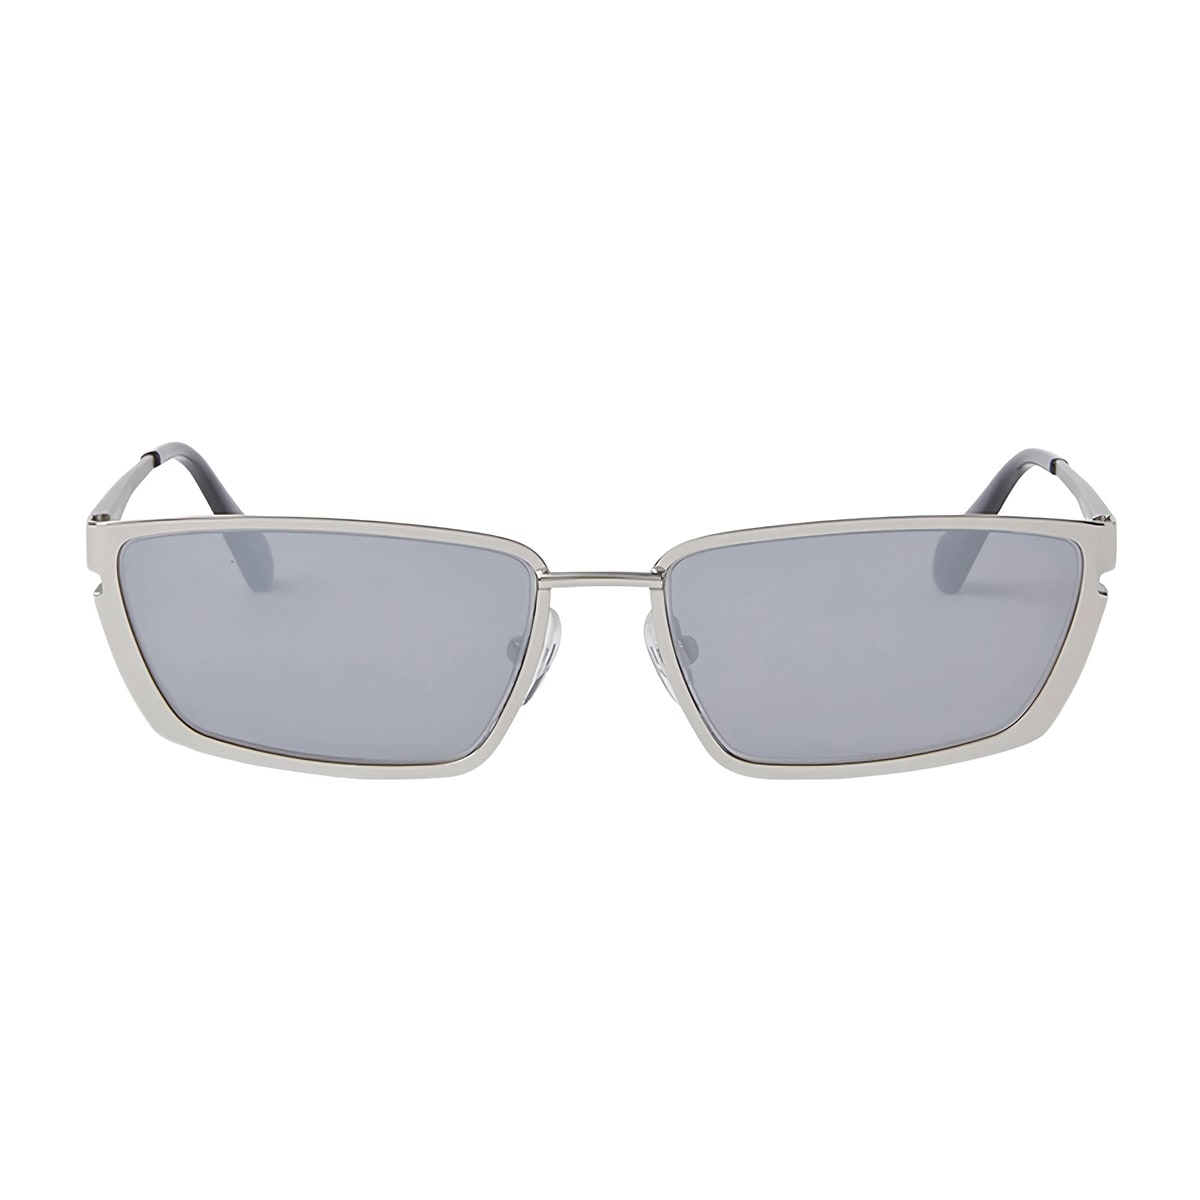 Oeri119 Richfield 7272 Silver Silver Sunglasses